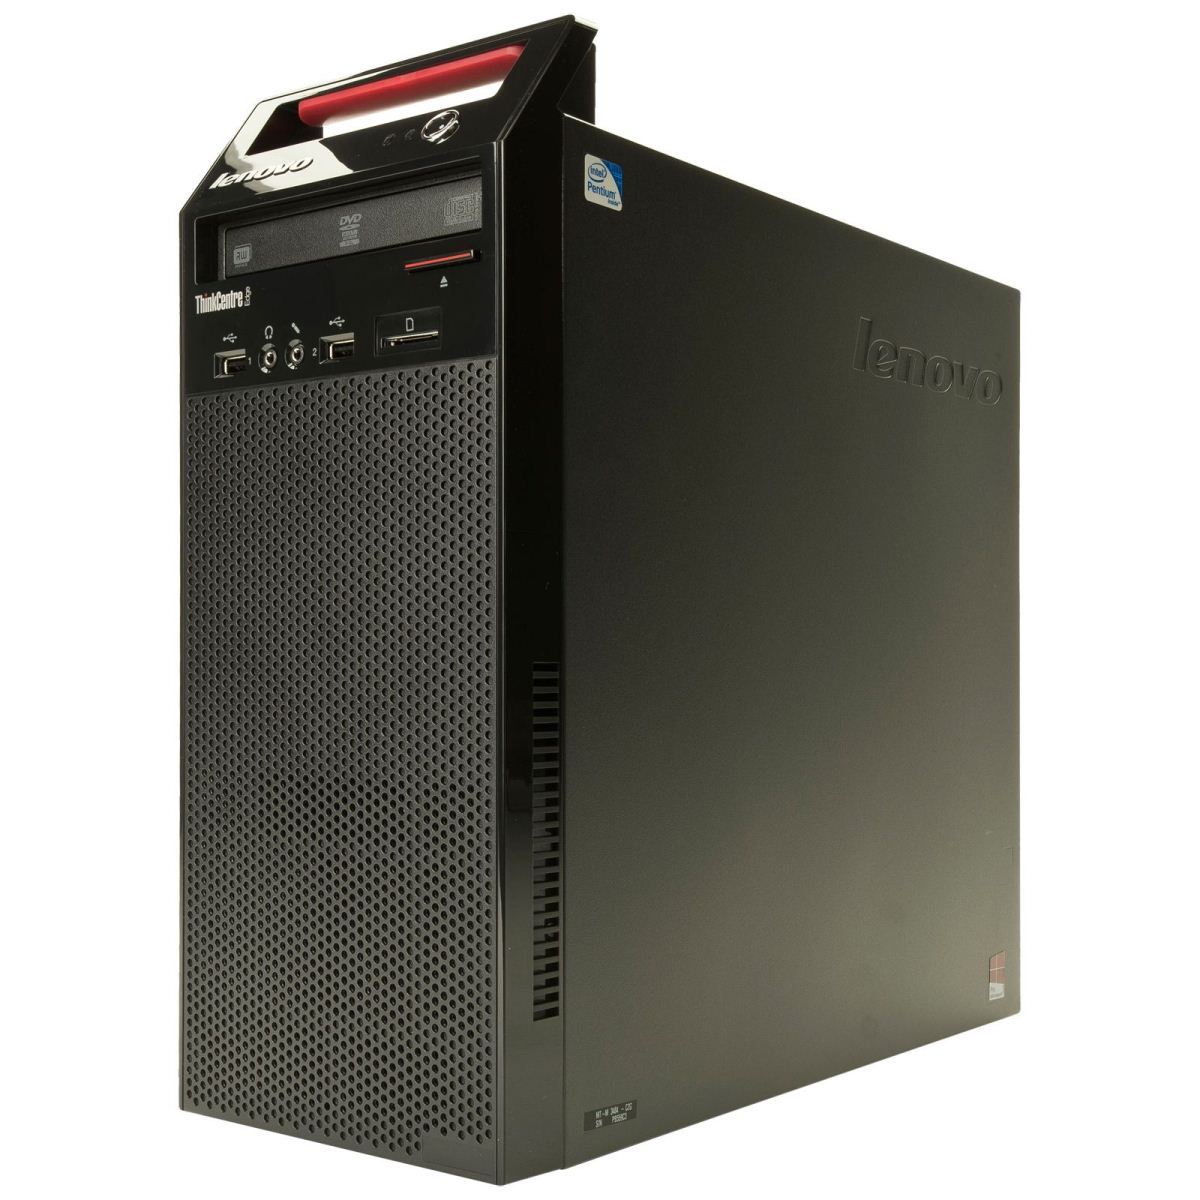 Máy tính để bàn PC Lenovo ThinkCentre E73 MT, Core i3-4150/4GB/500GB  (10AS00BNVA)